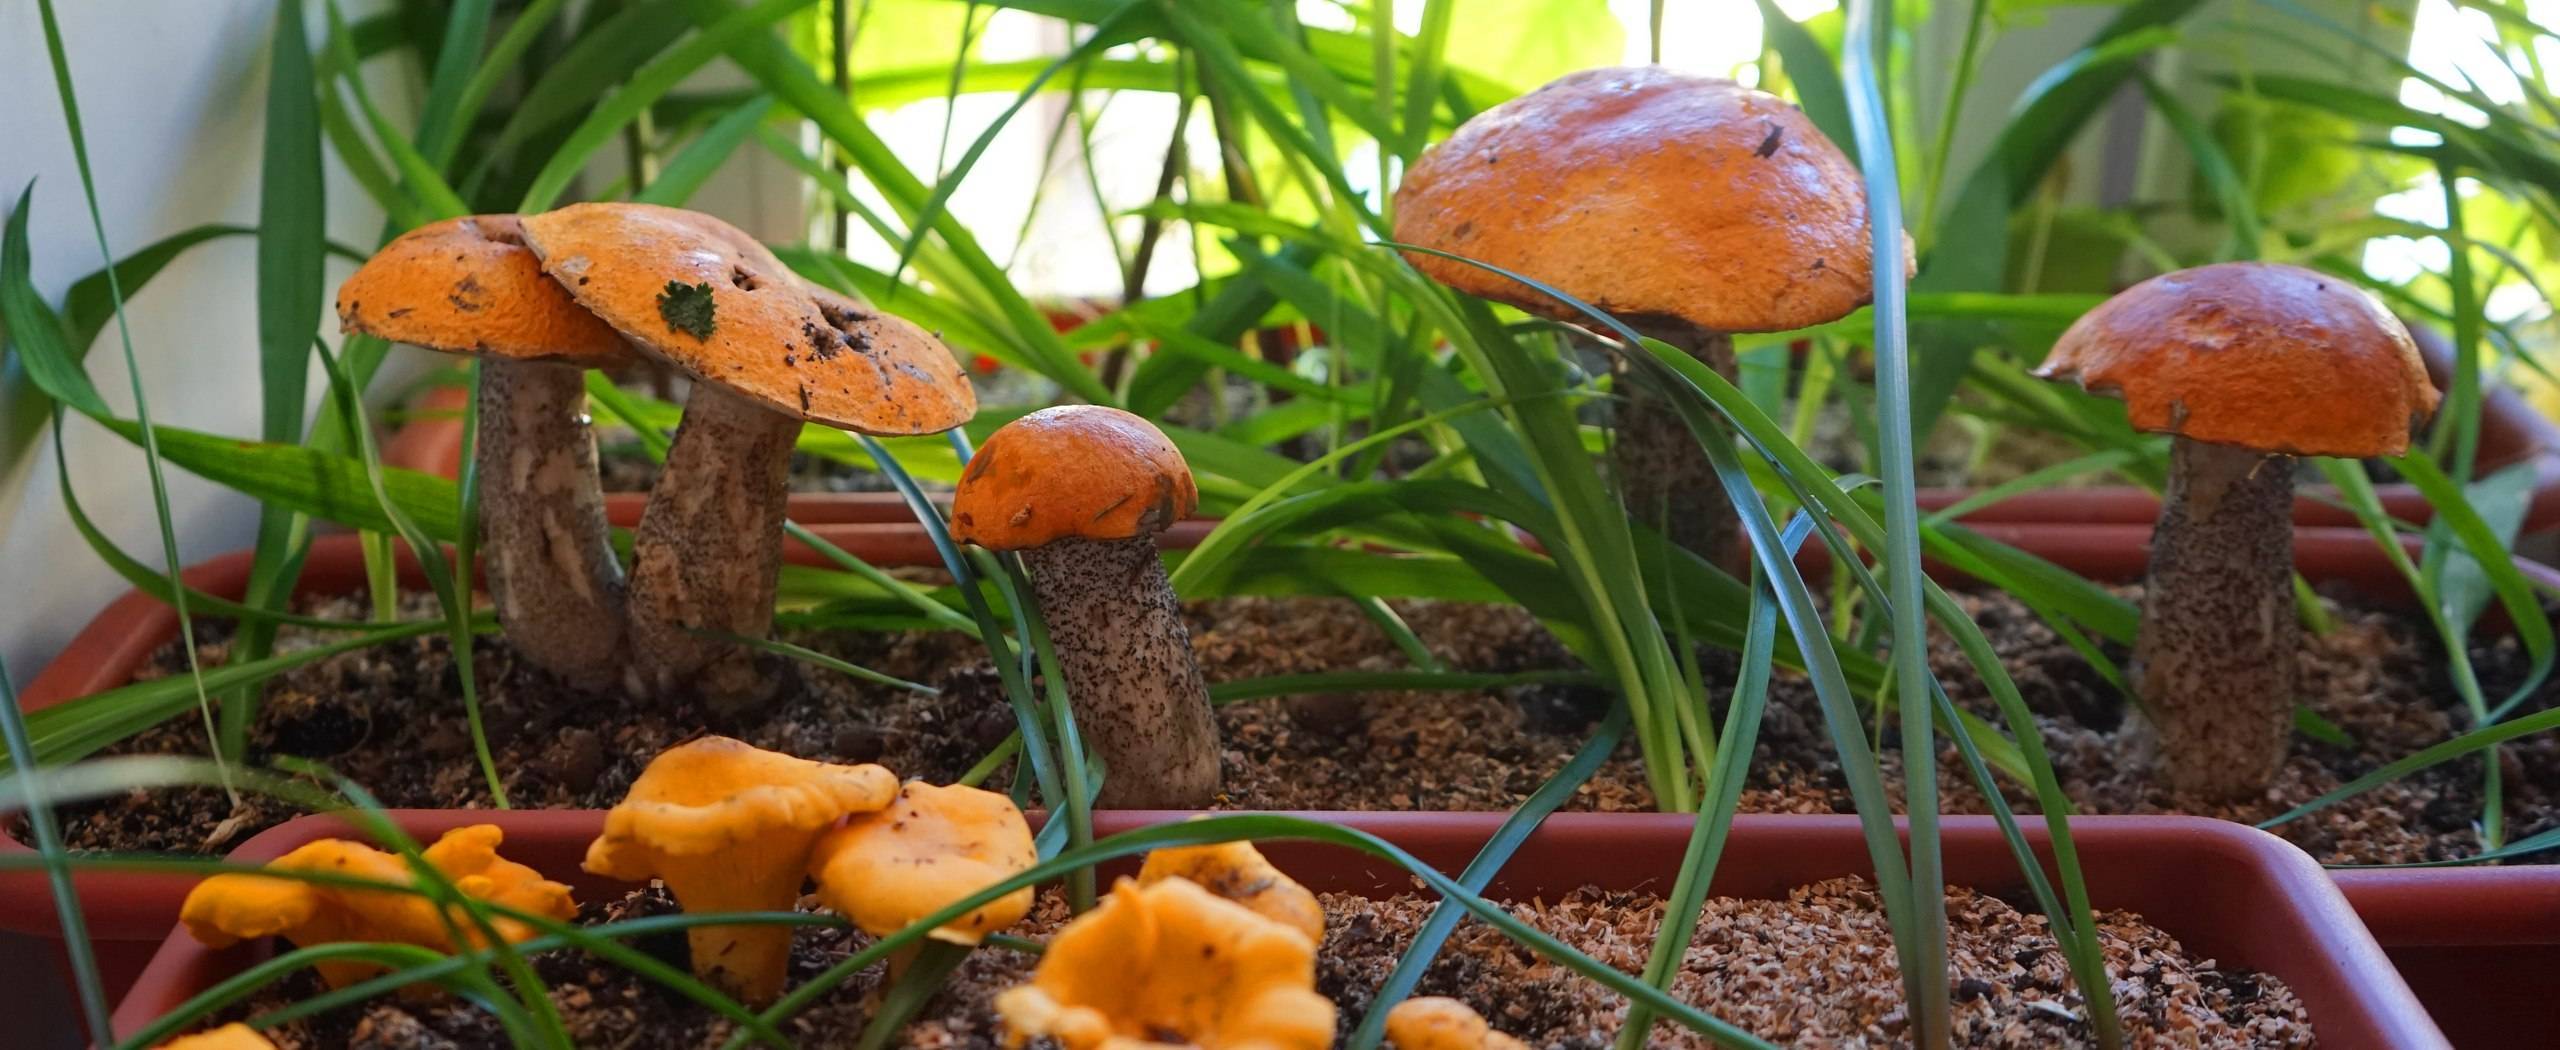 Выращивание белых грибов в домашних условиях инструкция для новичков